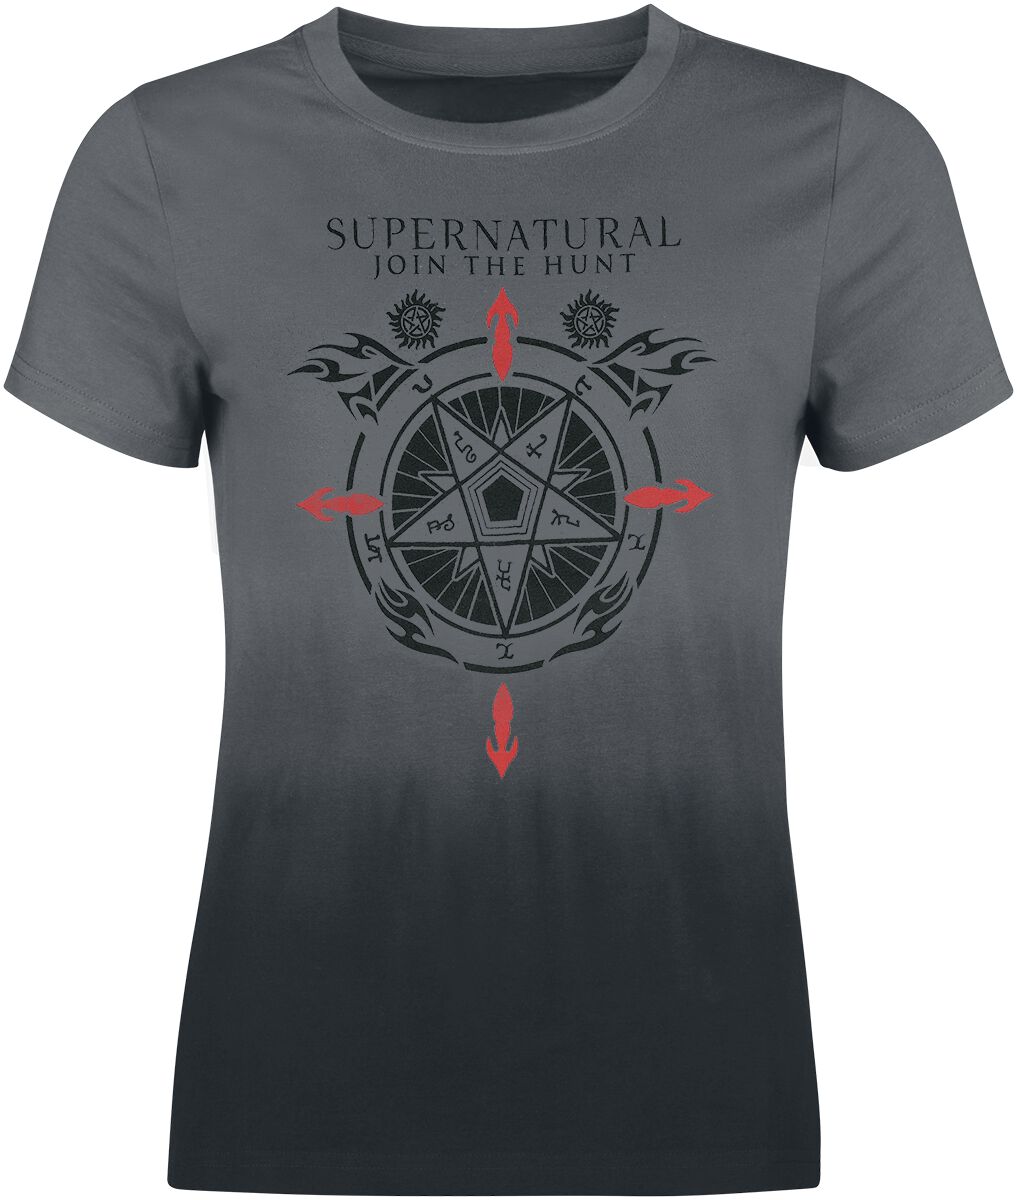 Supernatural Symbols T-Shirt multicolor in L